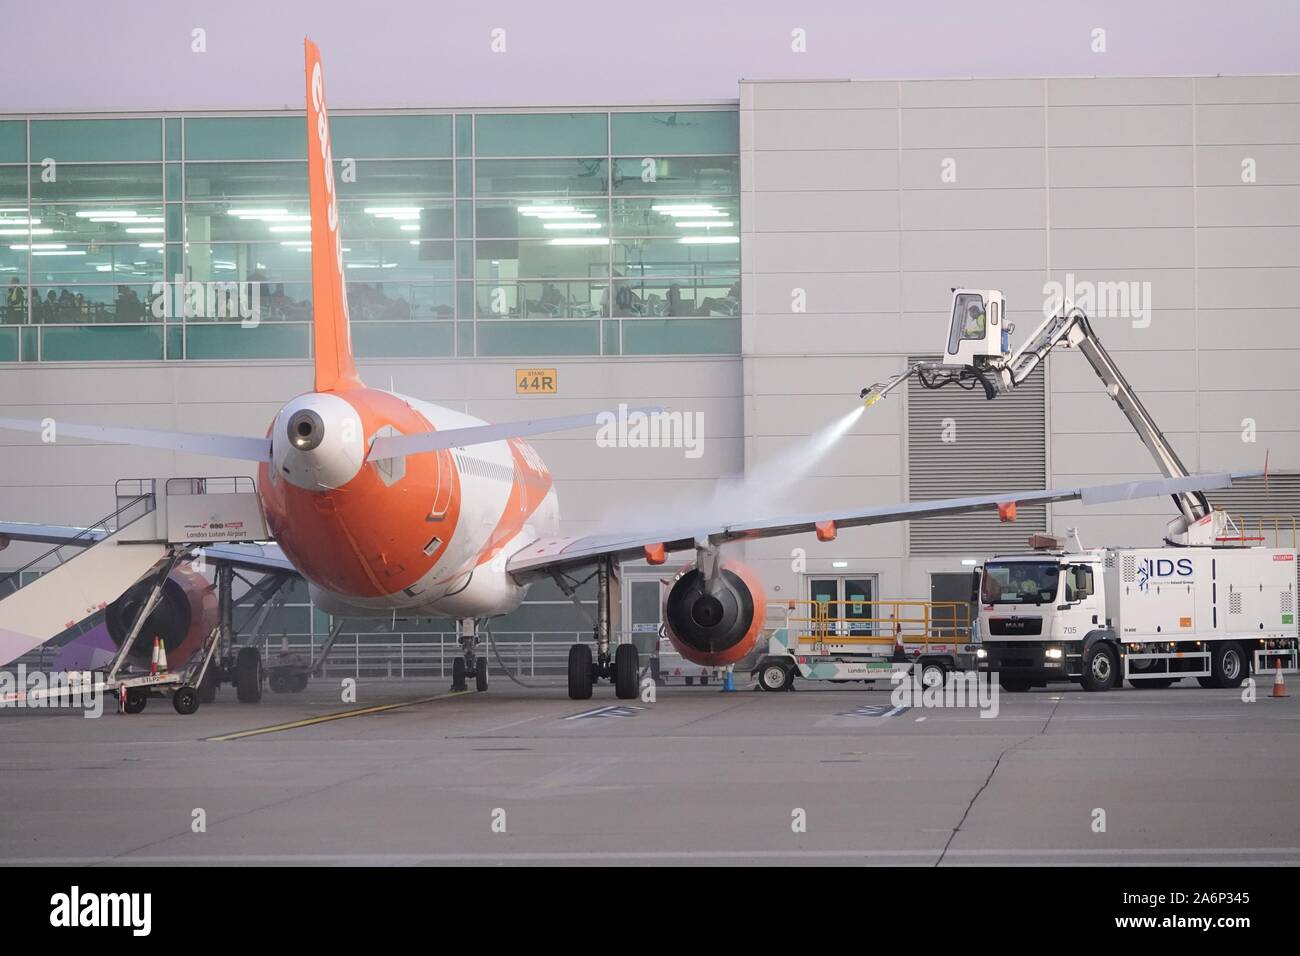 Aéroport de Luton. 28 octobre 2019. Les avions de la flotte d'easyJet sont dégivrées ce matin froid et gelé Banque D'Images